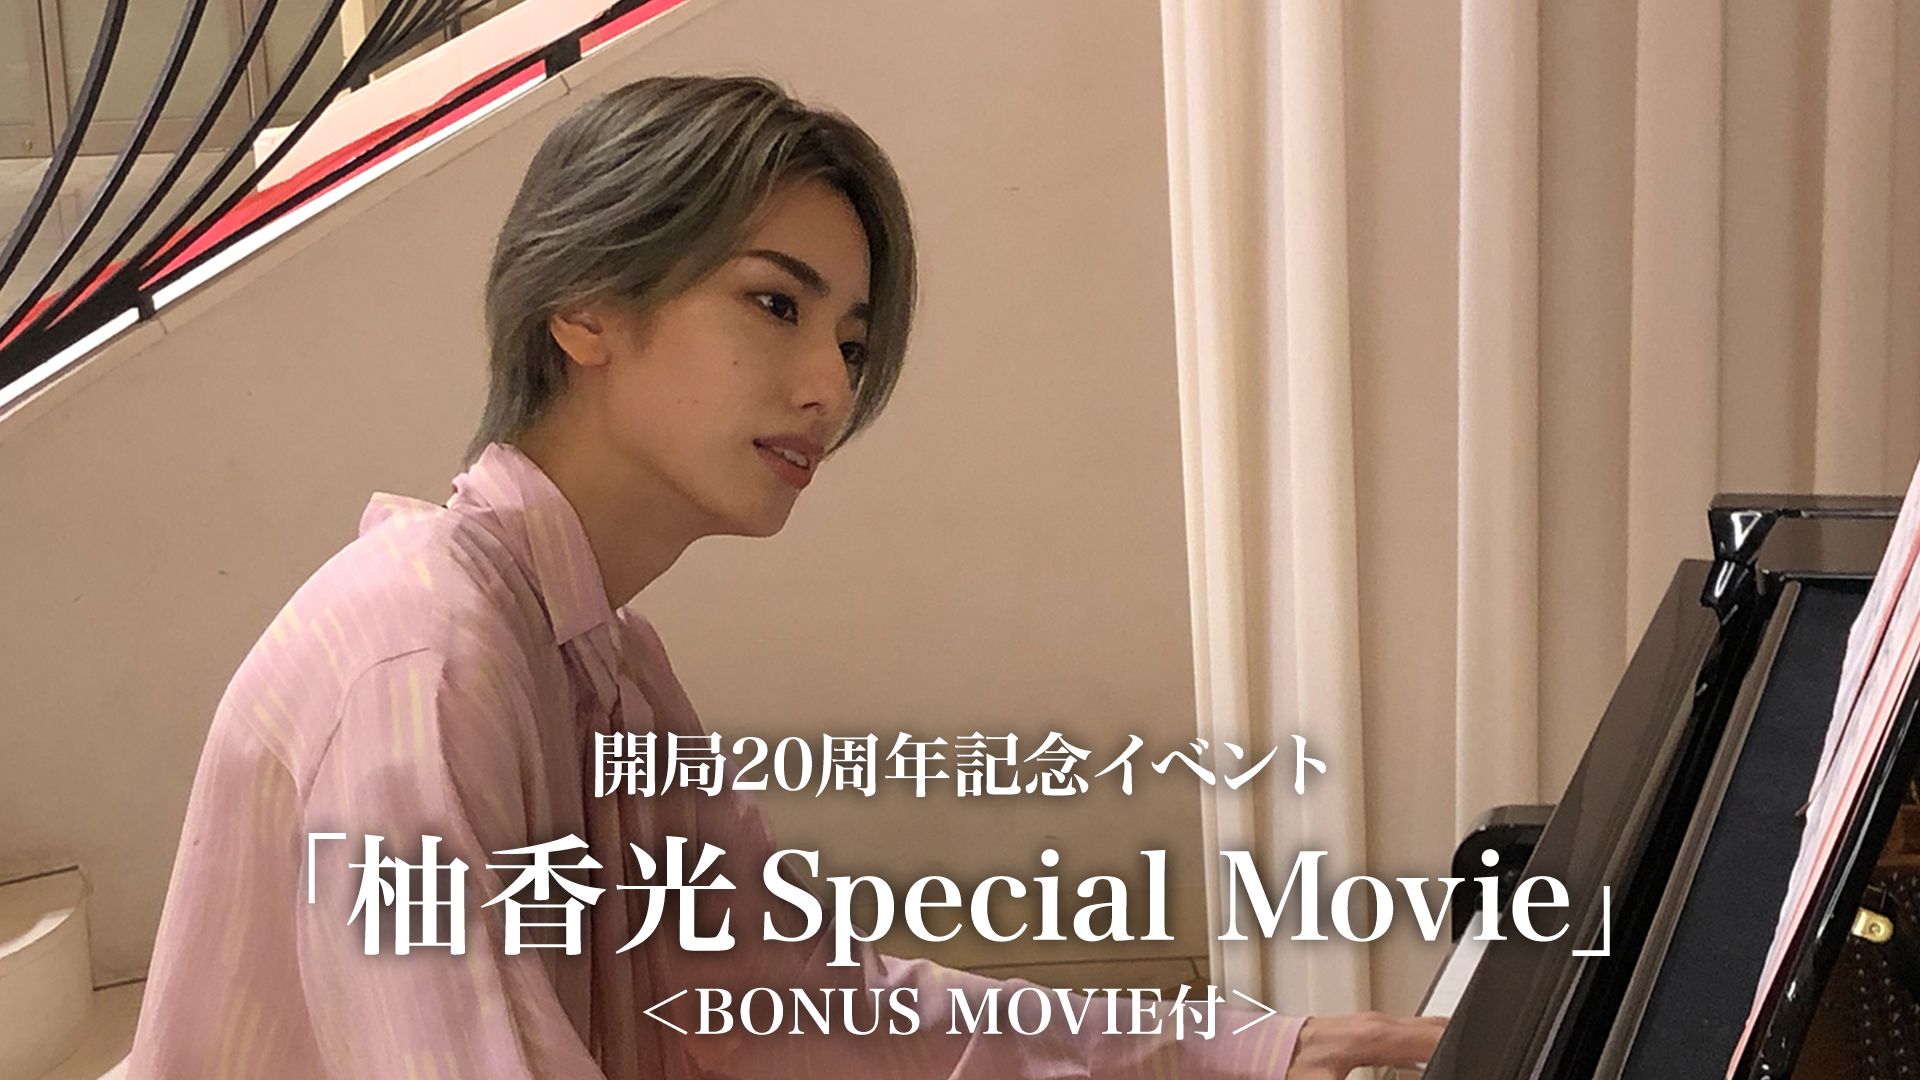 開局20周年記念イベント「柚香光Special Movie」<BONUS MOVIE付>